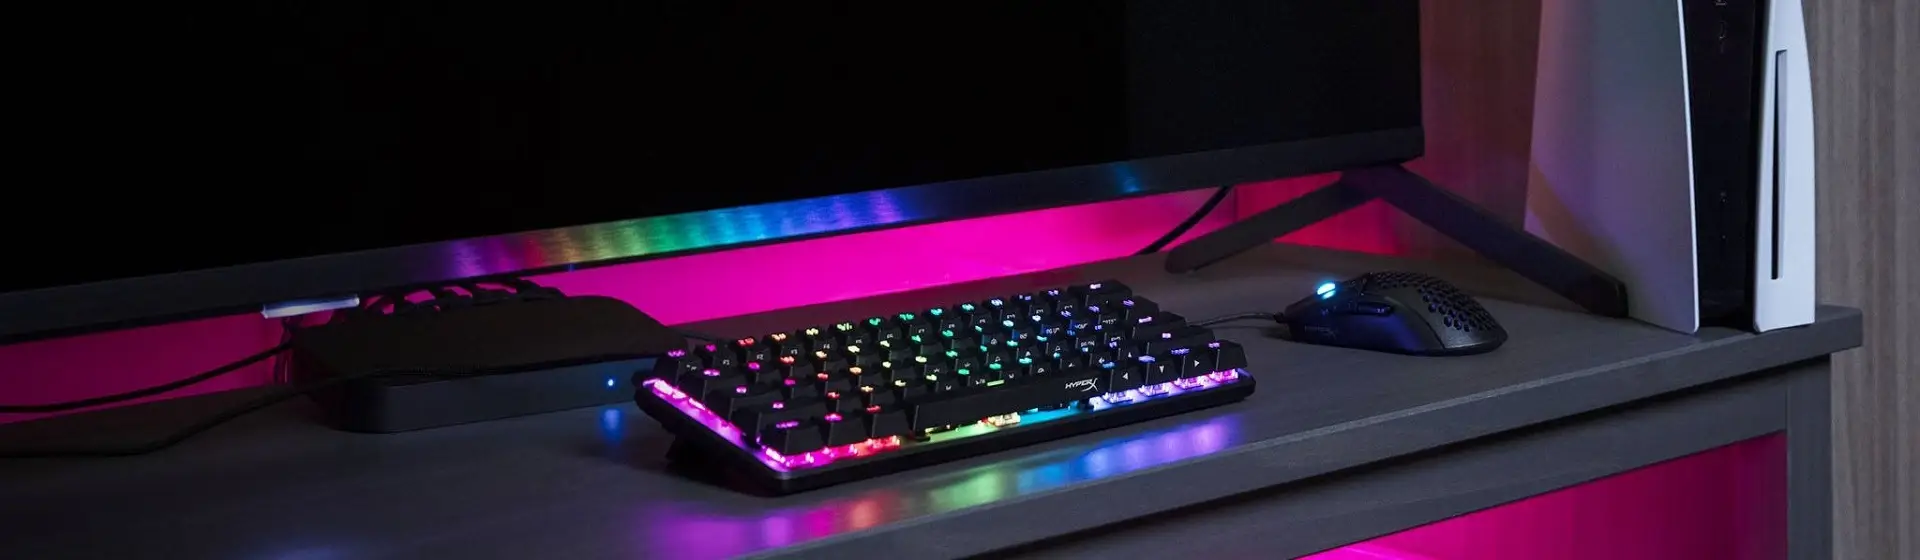 Melhor teclado HyperX: 5 modelos gamer para melhorar seu setup